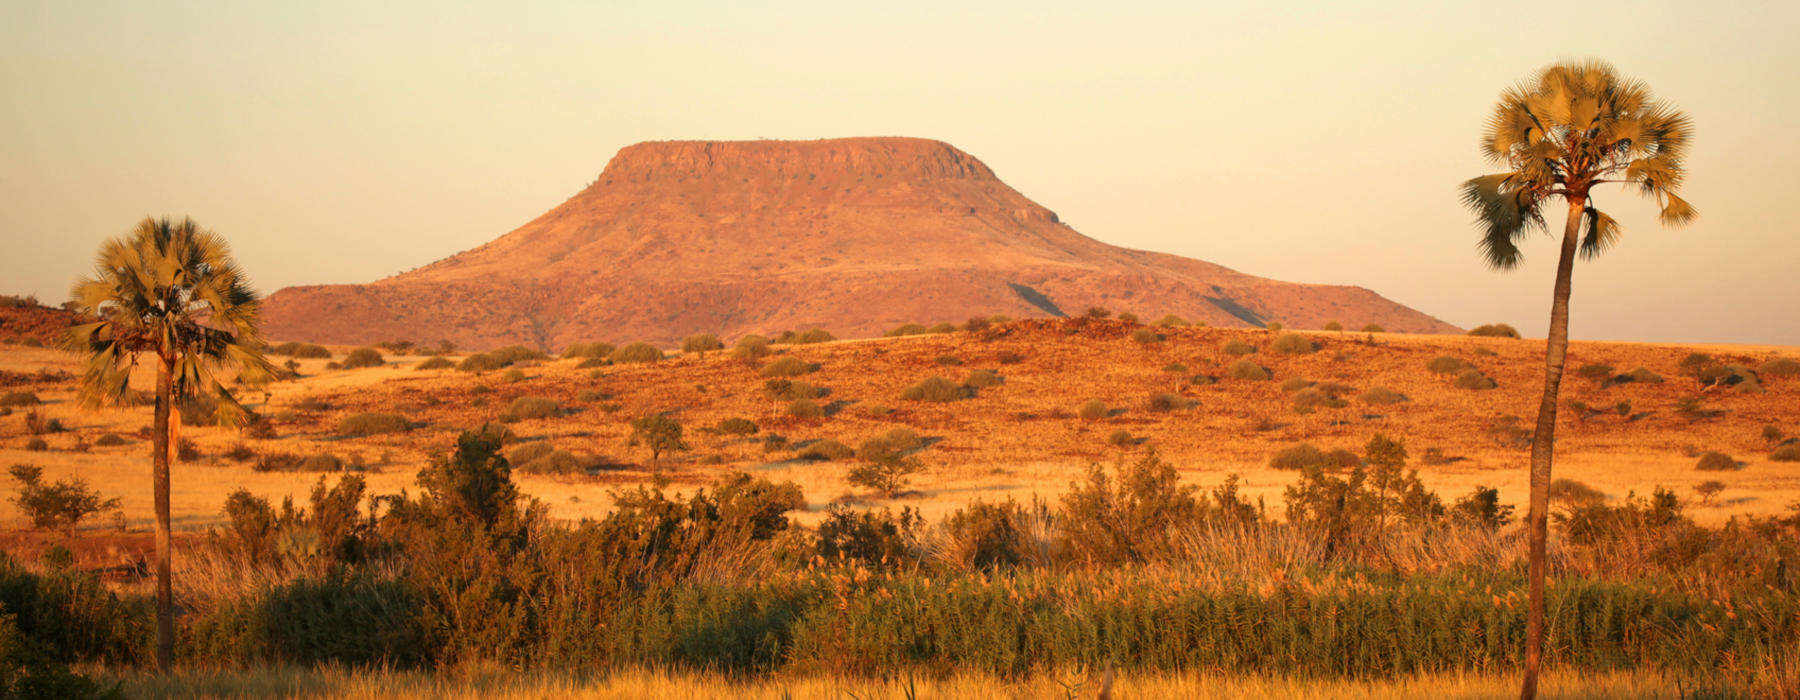 Etosha National Park Holidays